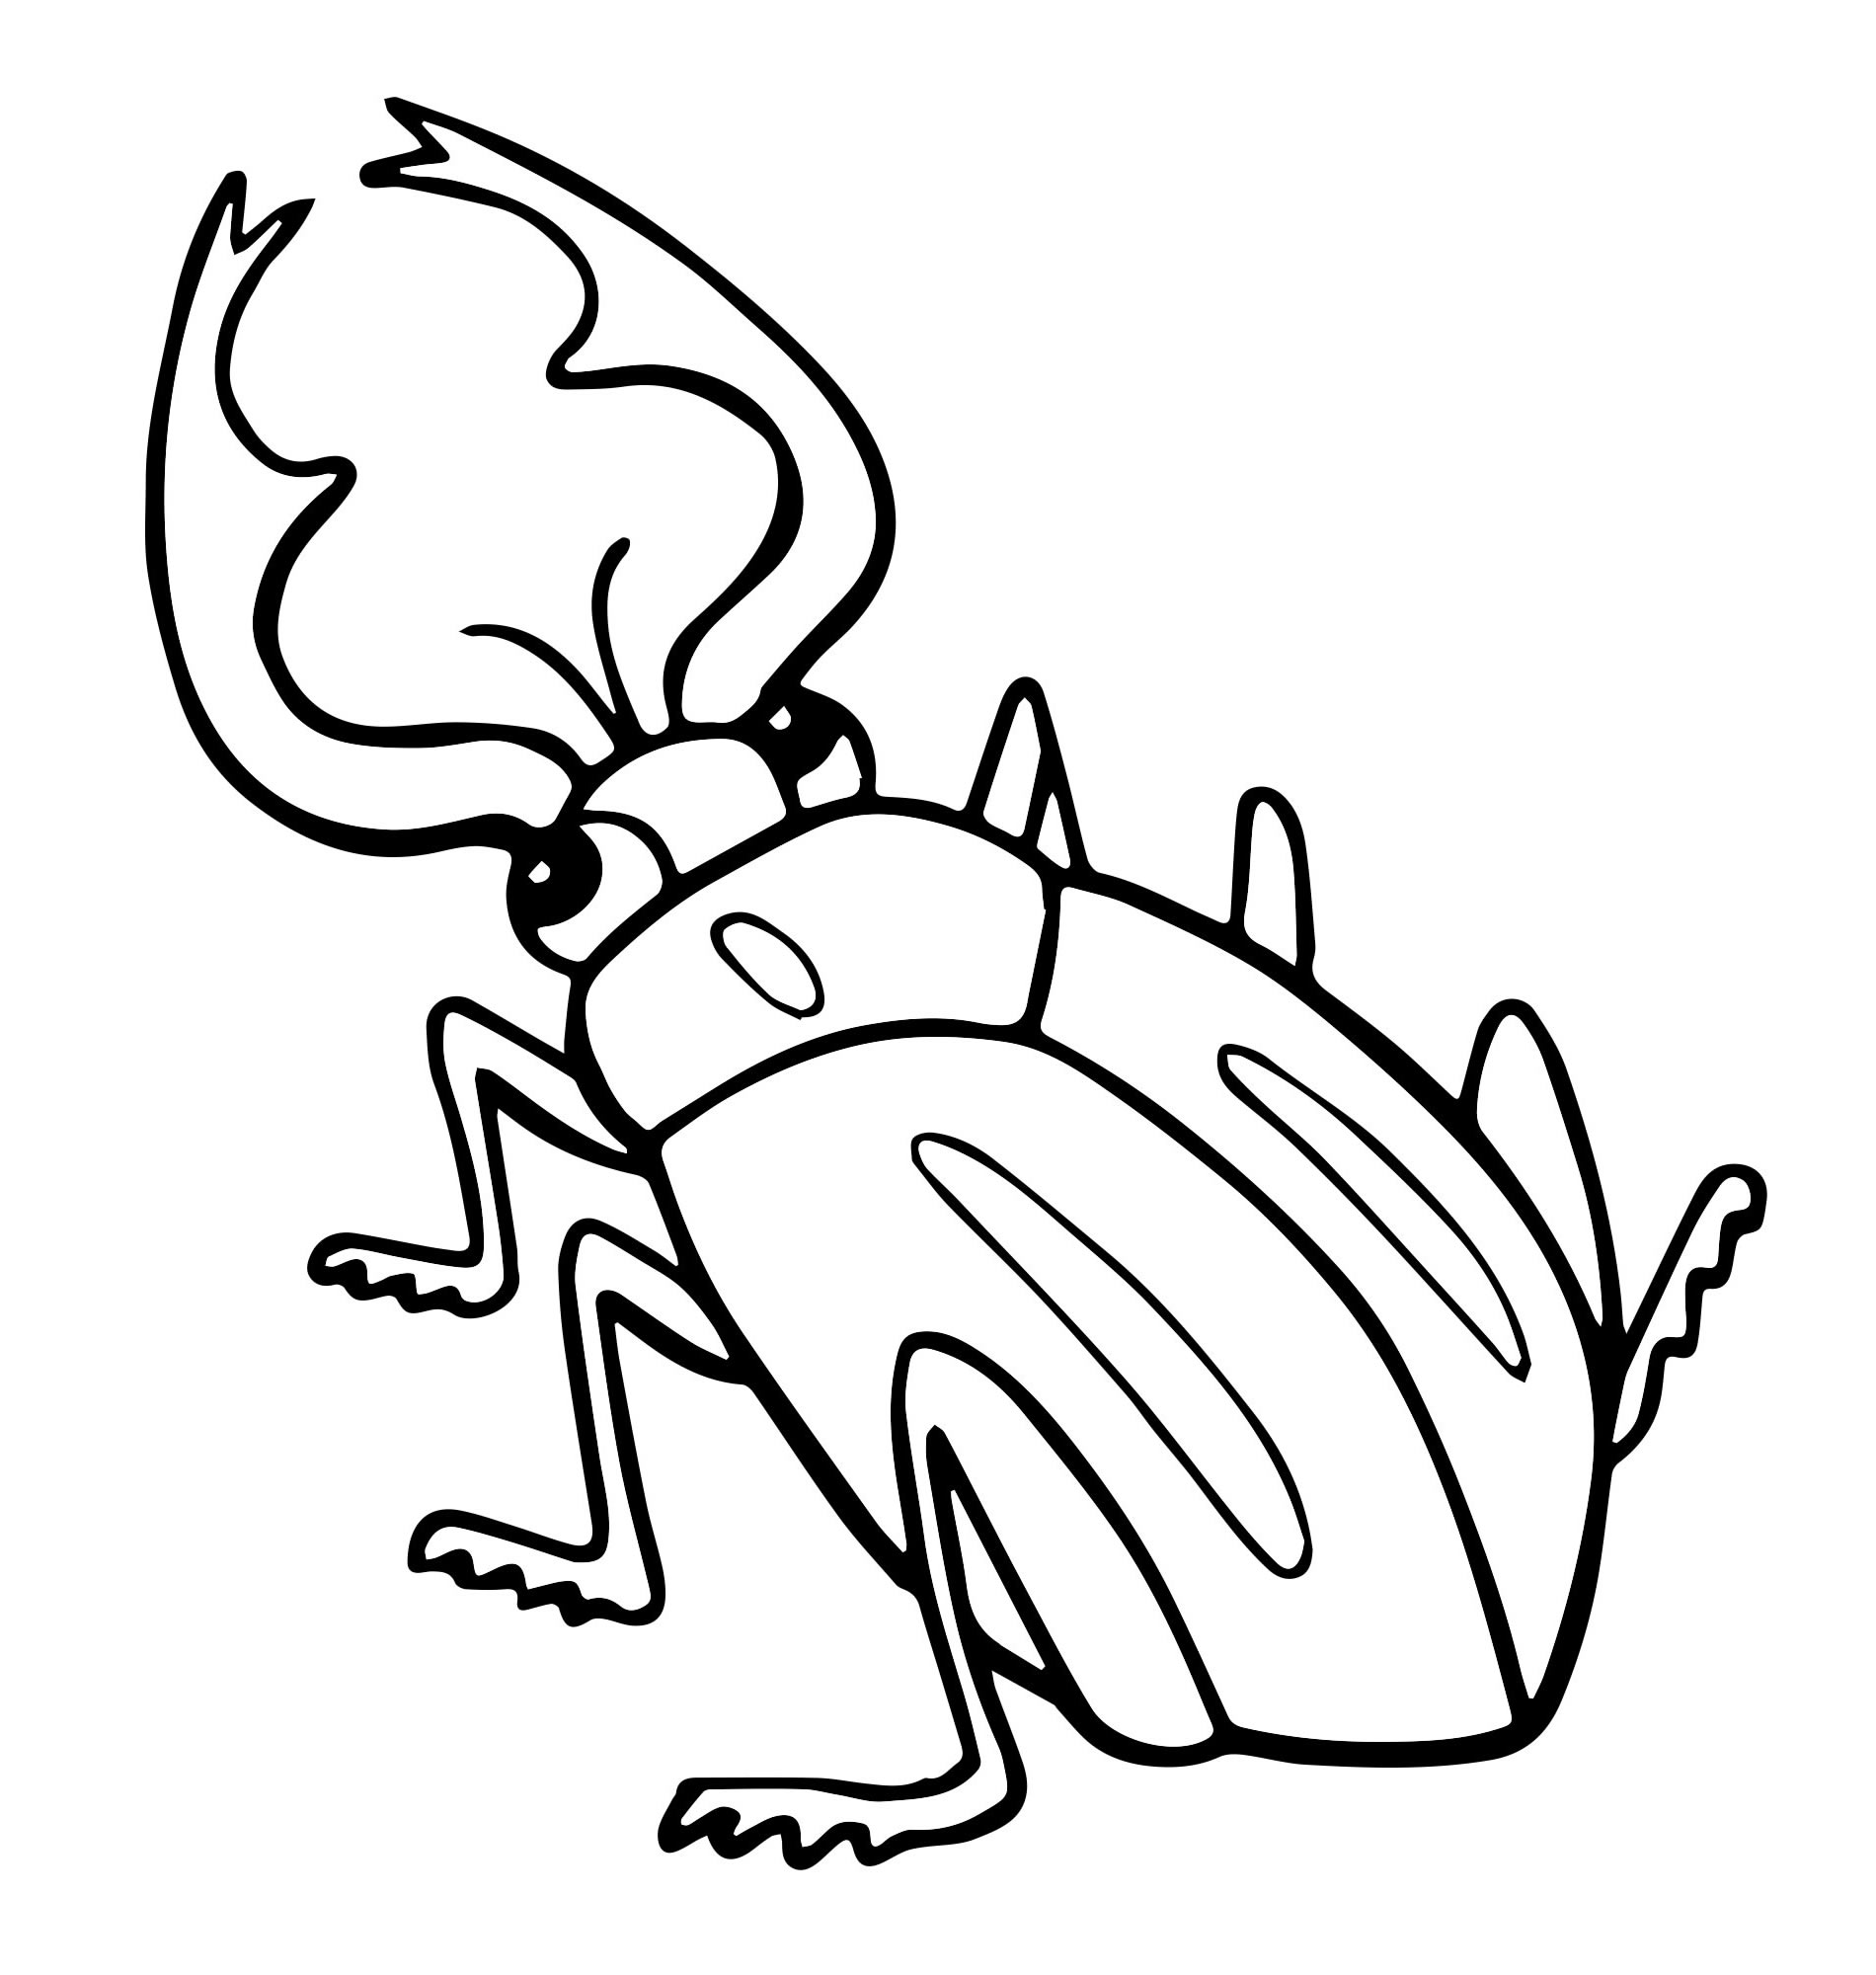 Творческая раскраска жуки для детей 3-4 лет